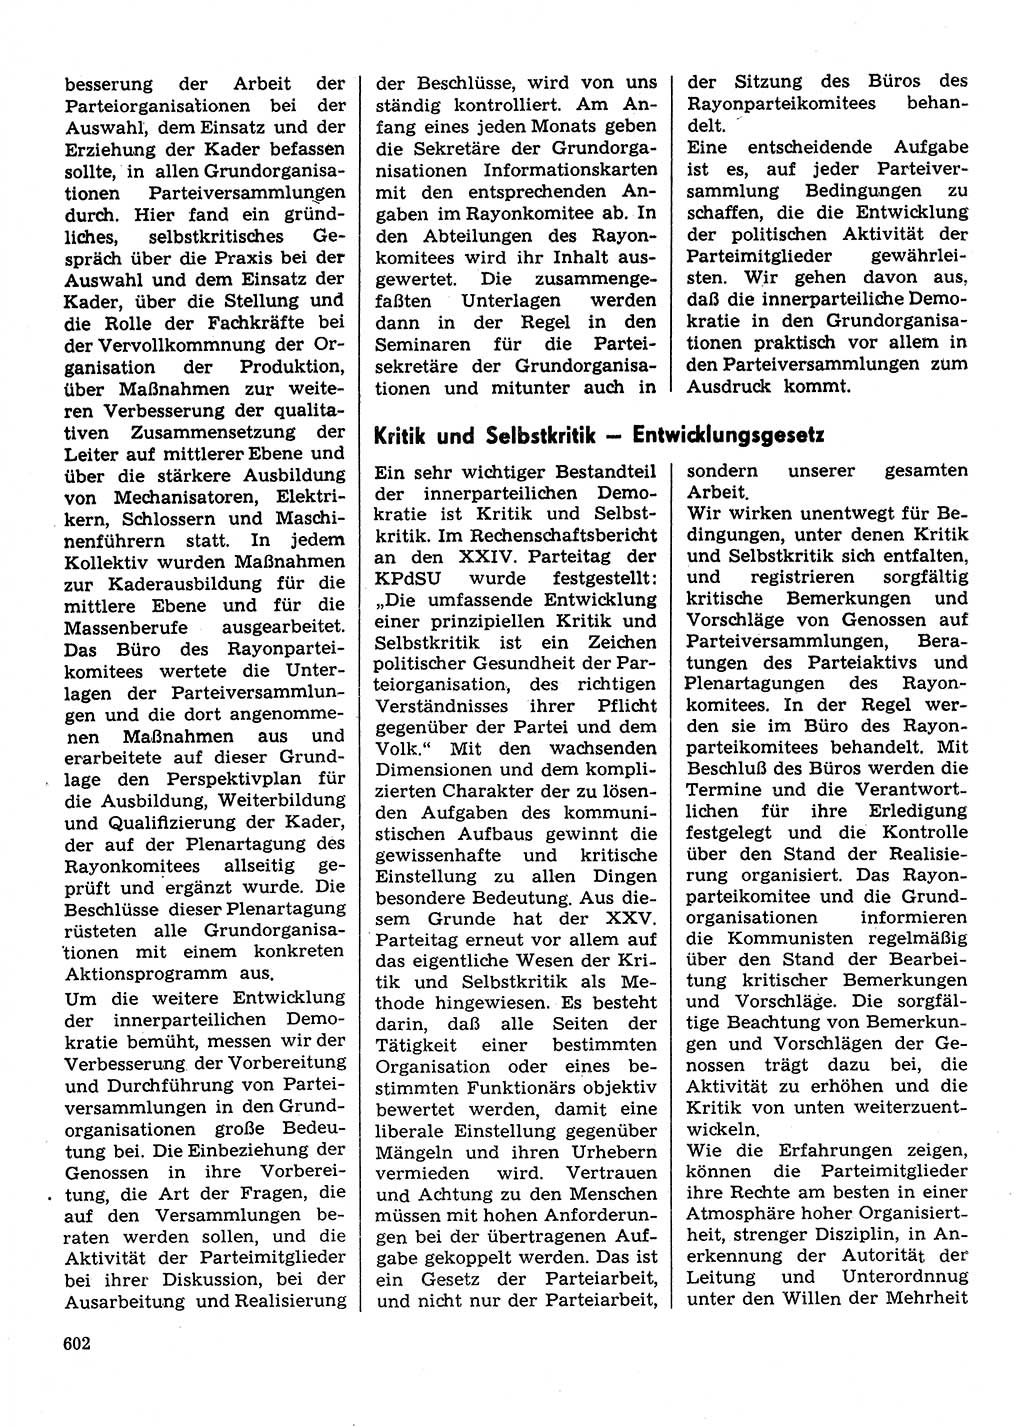 Neuer Weg (NW), Organ des Zentralkomitees (ZK) der SED (Sozialistische Einheitspartei Deutschlands) für Fragen des Parteilebens, 31. Jahrgang [Deutsche Demokratische Republik (DDR)] 1976, Seite 602 (NW ZK SED DDR 1976, S. 602)